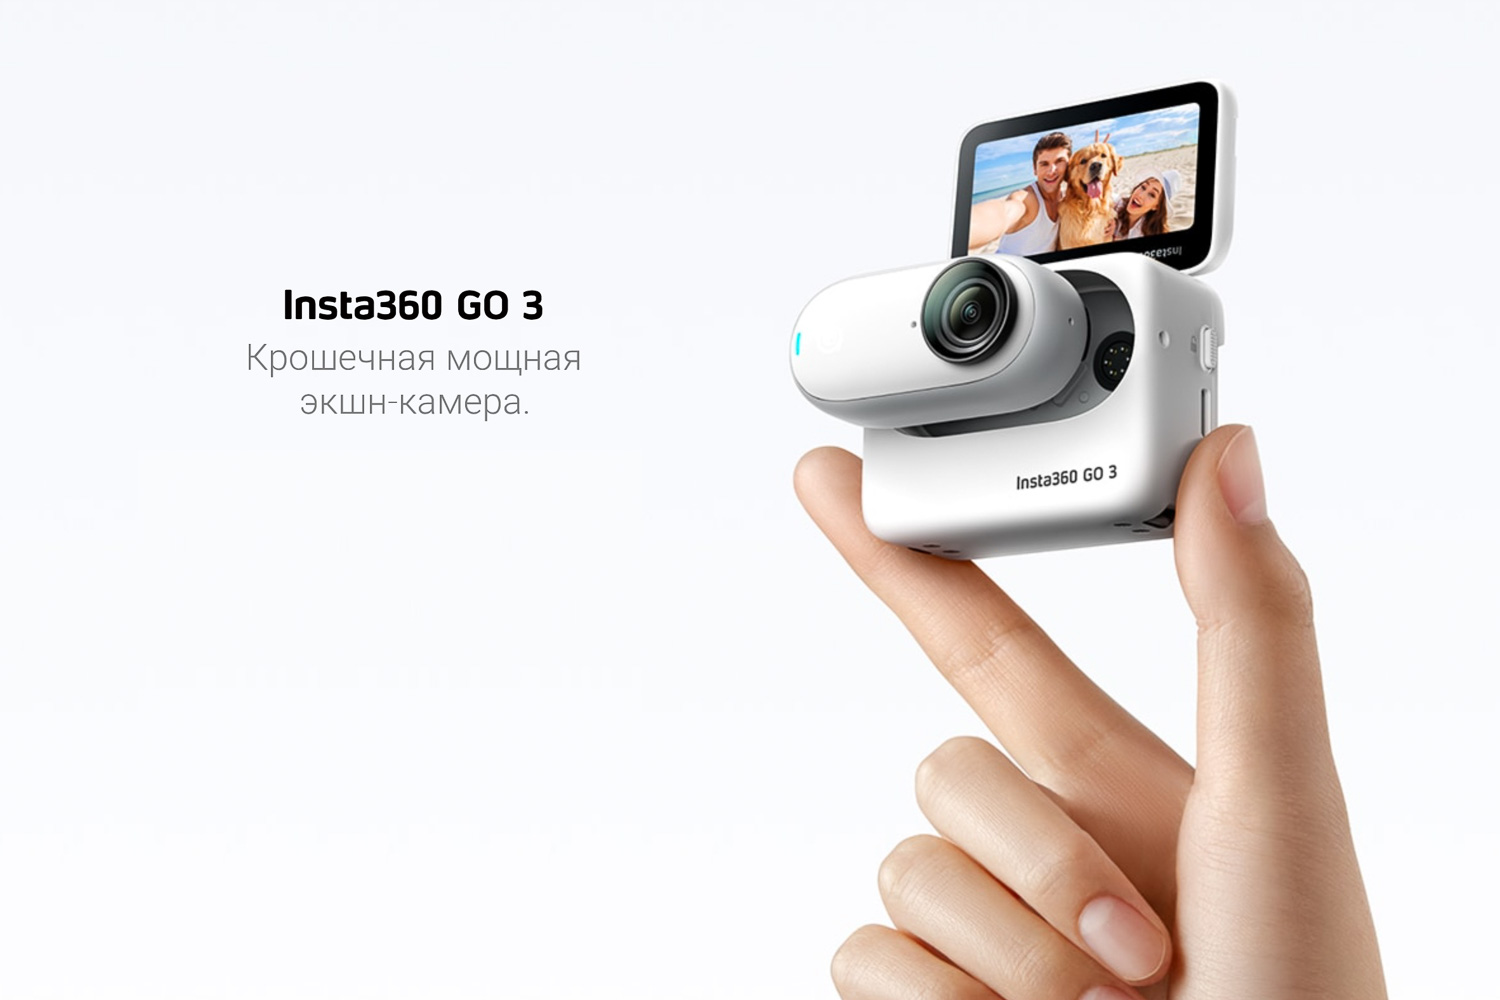 Новая миниатюрная экшн-камера Insta360 Go 3 – обзор и сравнение с предыдущей версией